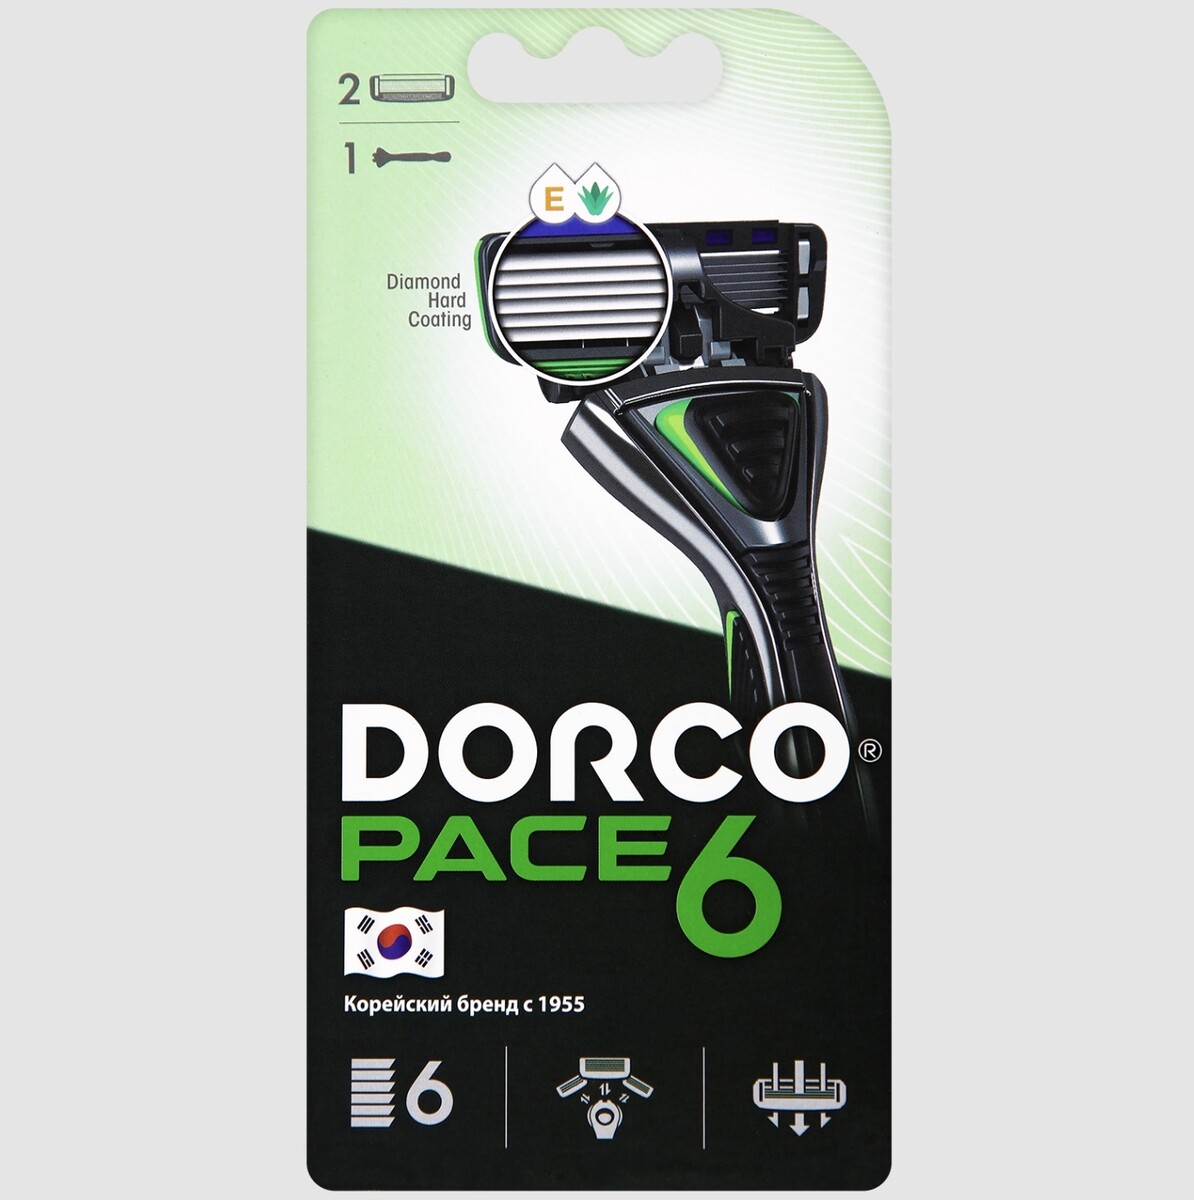 Dorco pace6 (станок+2's) система с 6лезвиями (ю.корея) Dorco